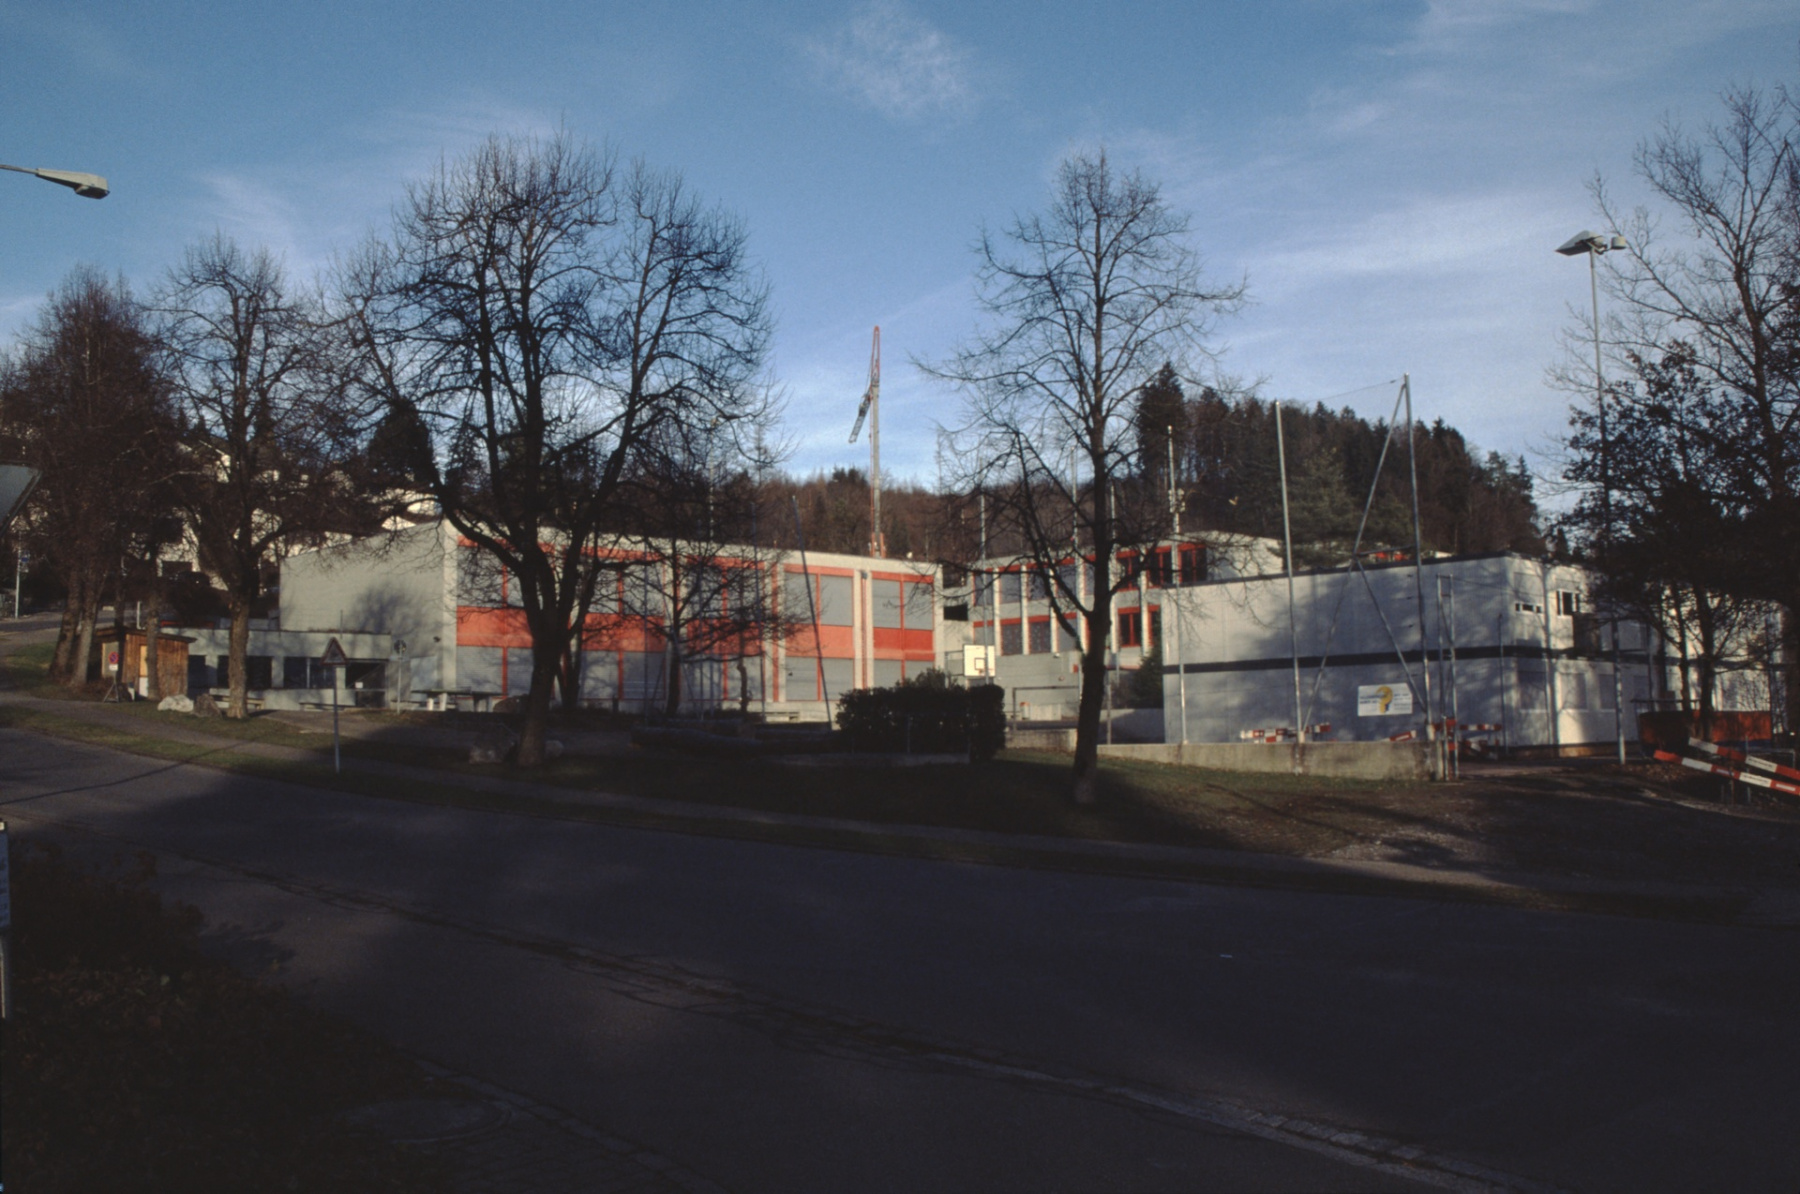 Oberstufenschulhaus Letten, Schulbaracken auf dem Turnplatz während Sanierung